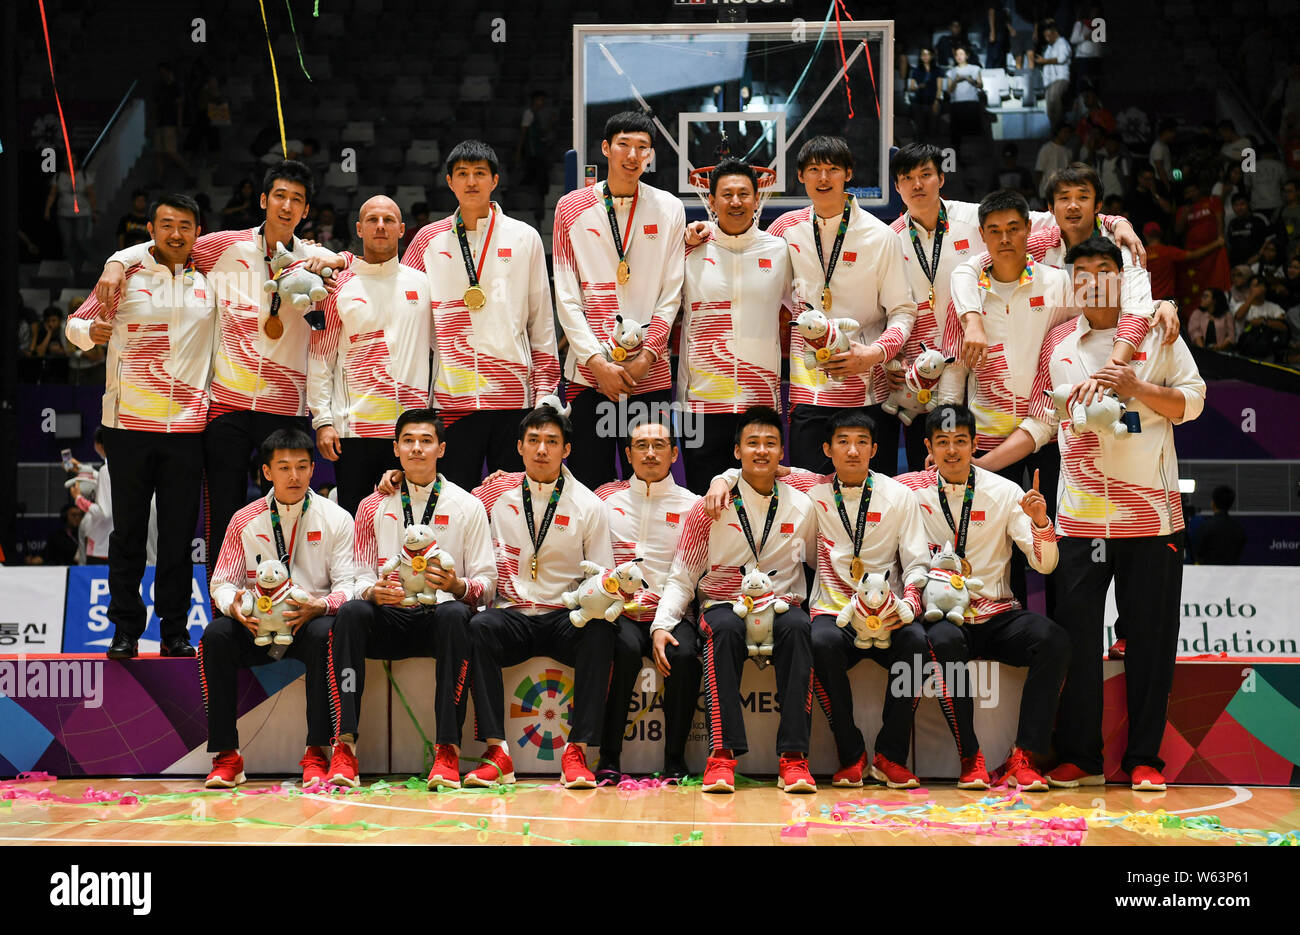 Les joueurs de national chinois posent l'équipe masculine de basketball à la cérémonie de remise des prix de la finale masculine de basket-ball pendant les Jeux Asiatiques de 2018, officiellement kno Banque D'Images